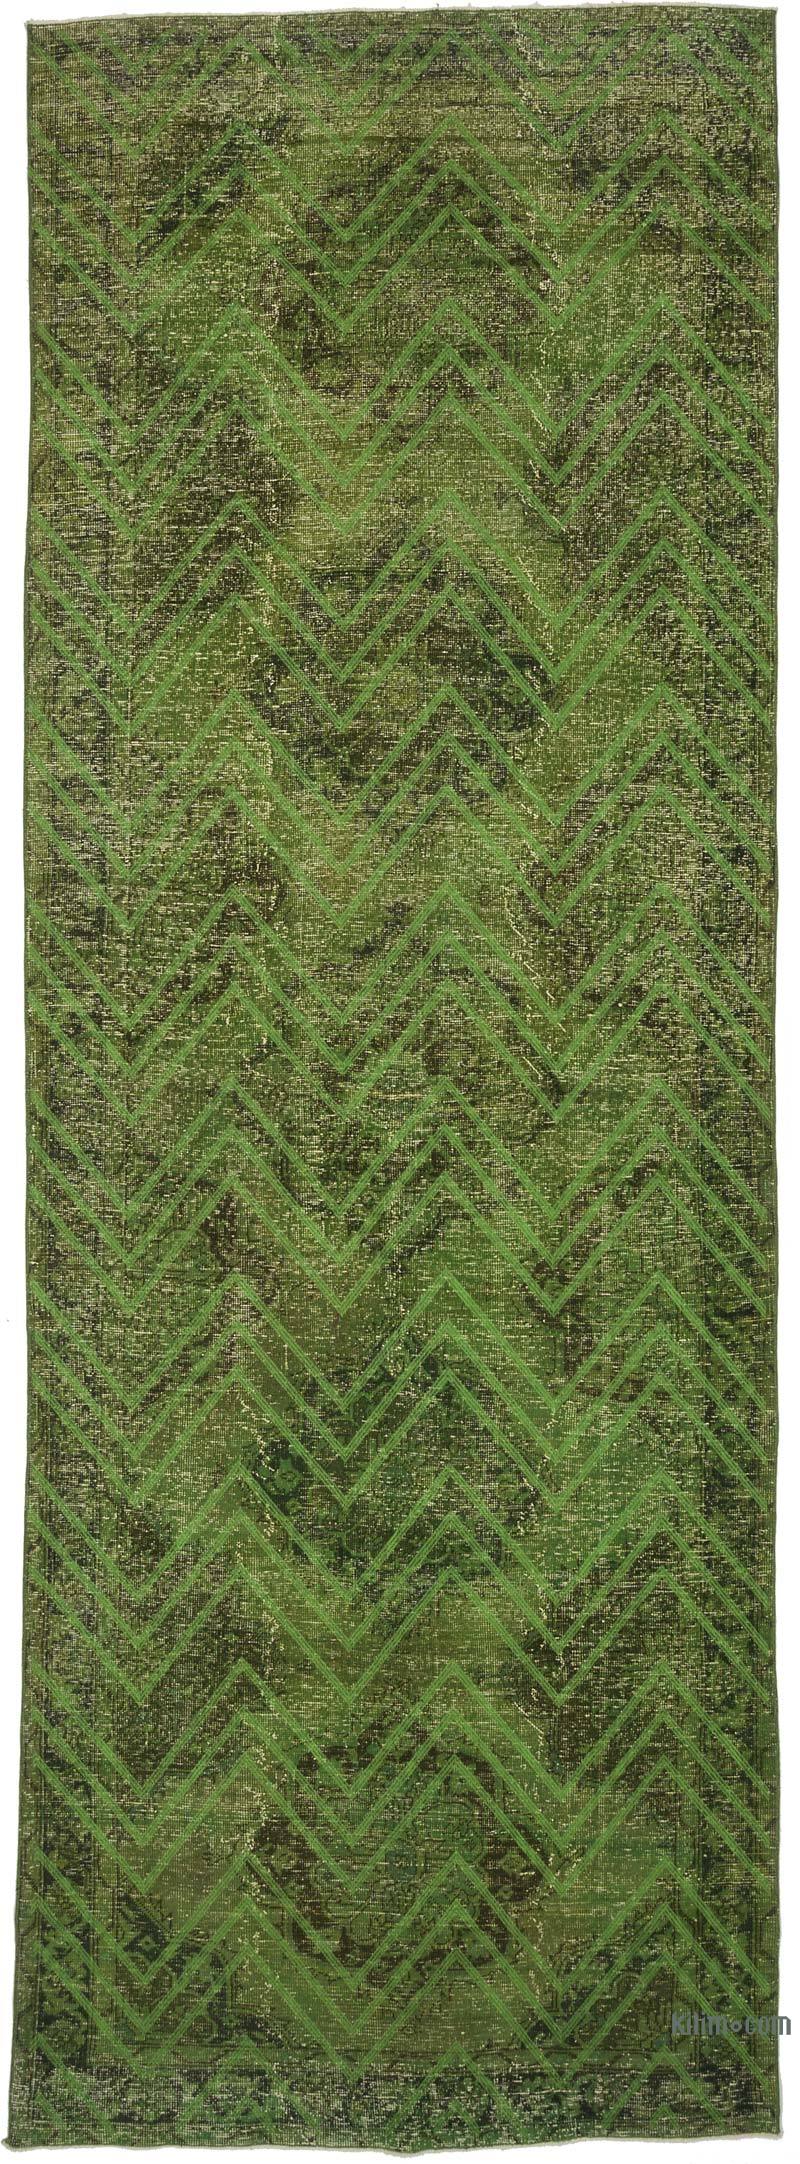 Yeşil İşlemeli ve Boyalı El Dokuma Vintage Halı - 142 cm x 406 cm - K0038731